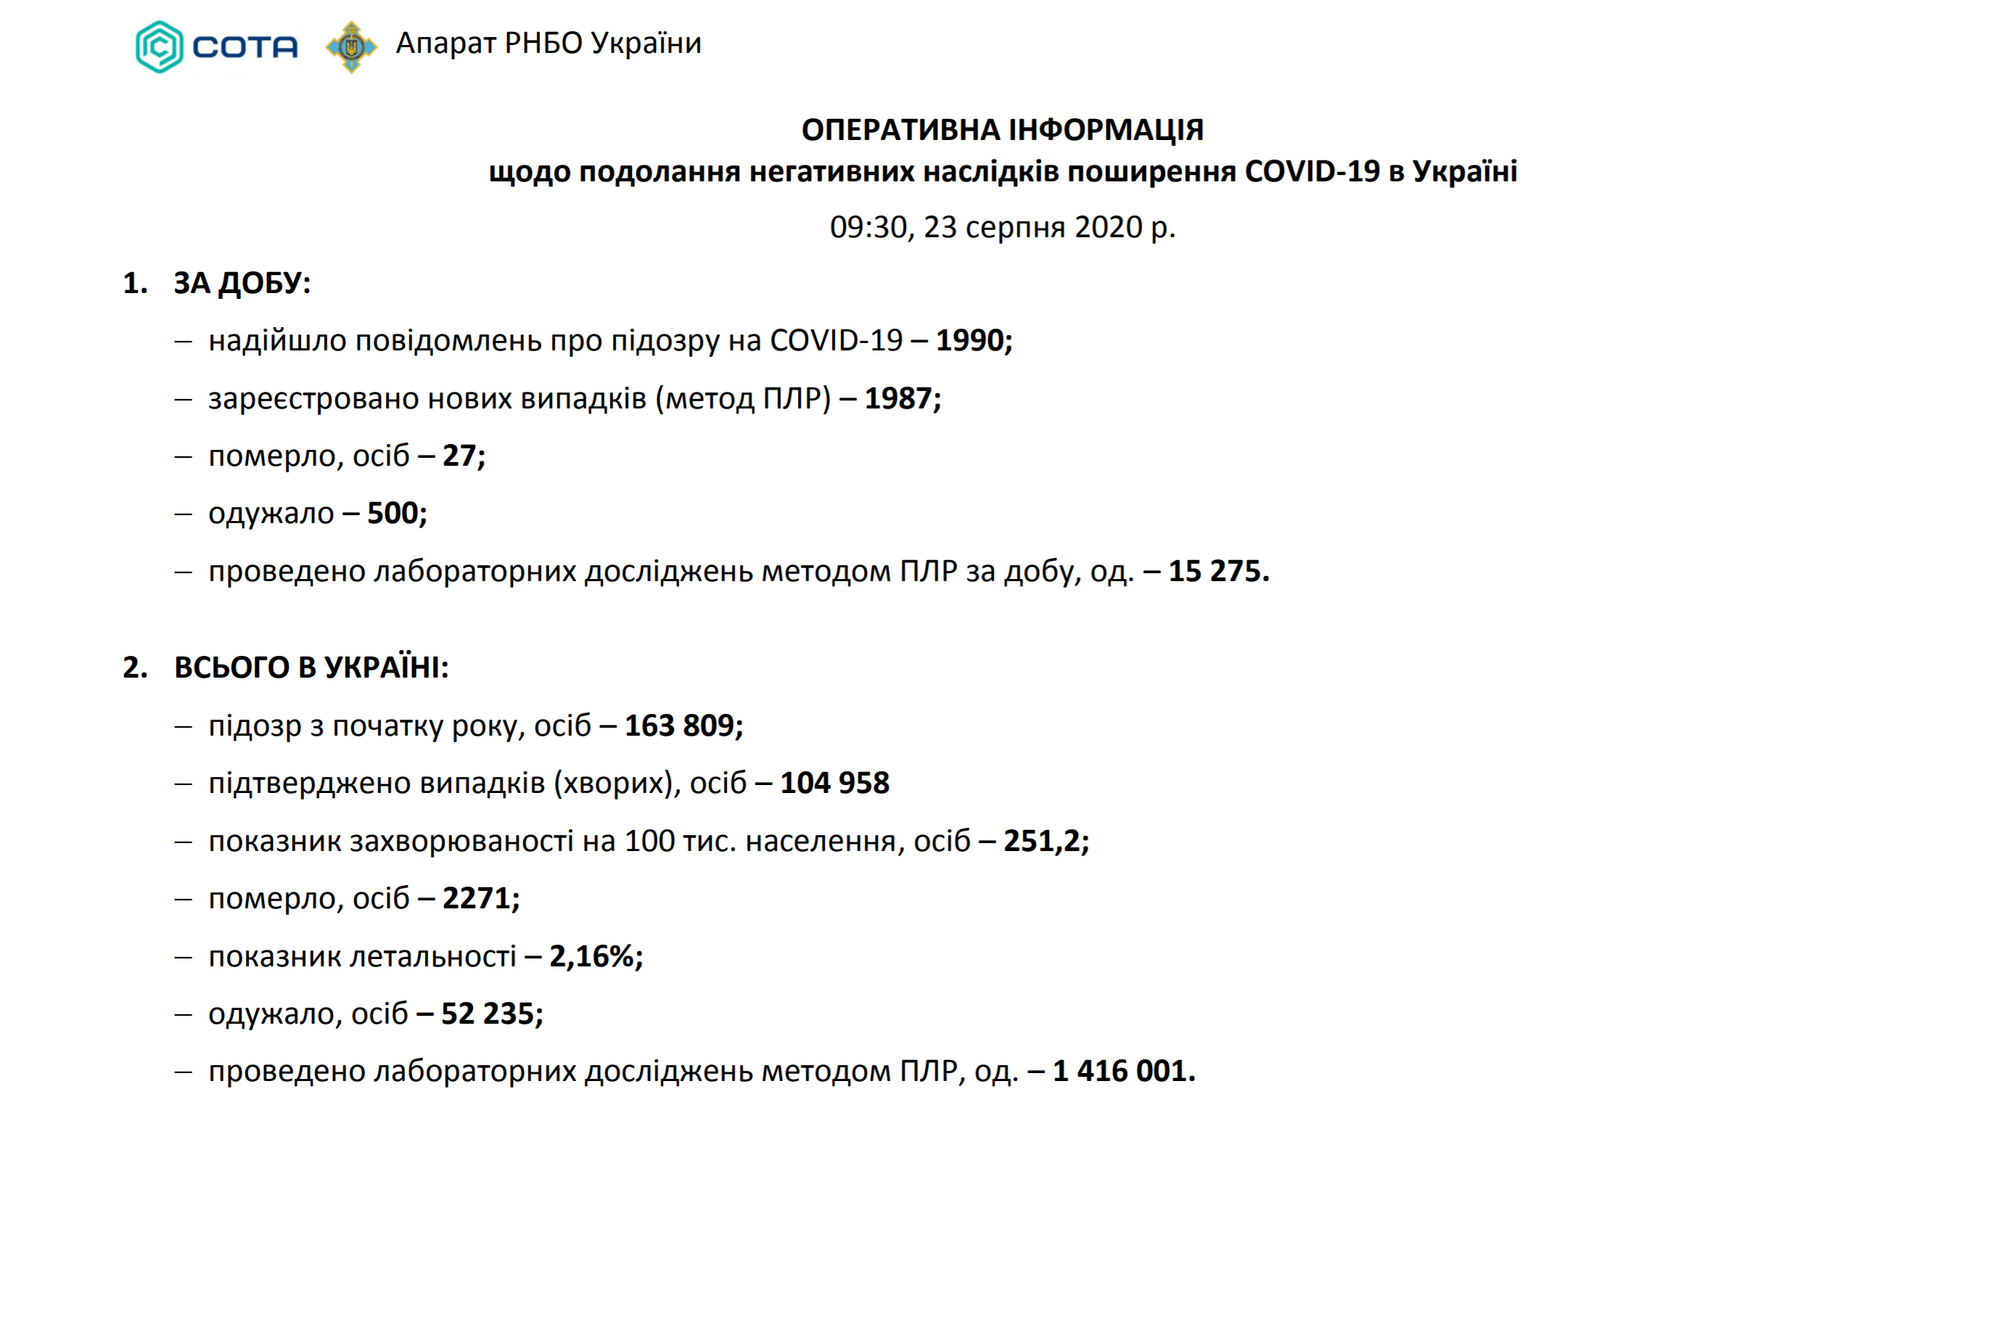 Загальні дані про коронавірус в Україні